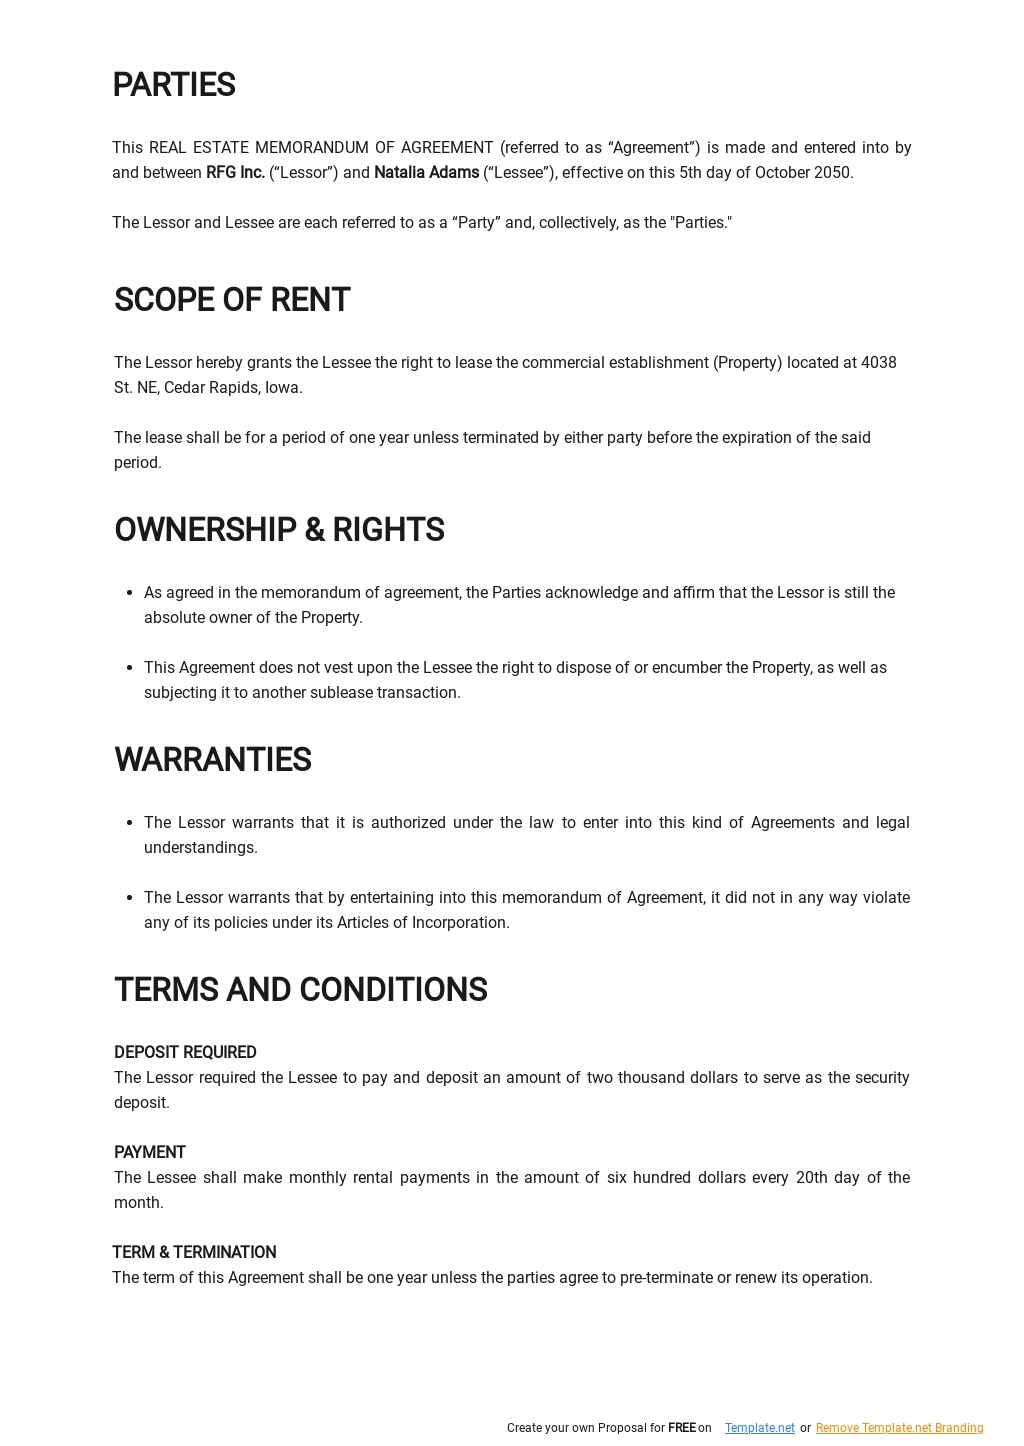 Real Estate Memorandum of Agreement Template 1.jpe